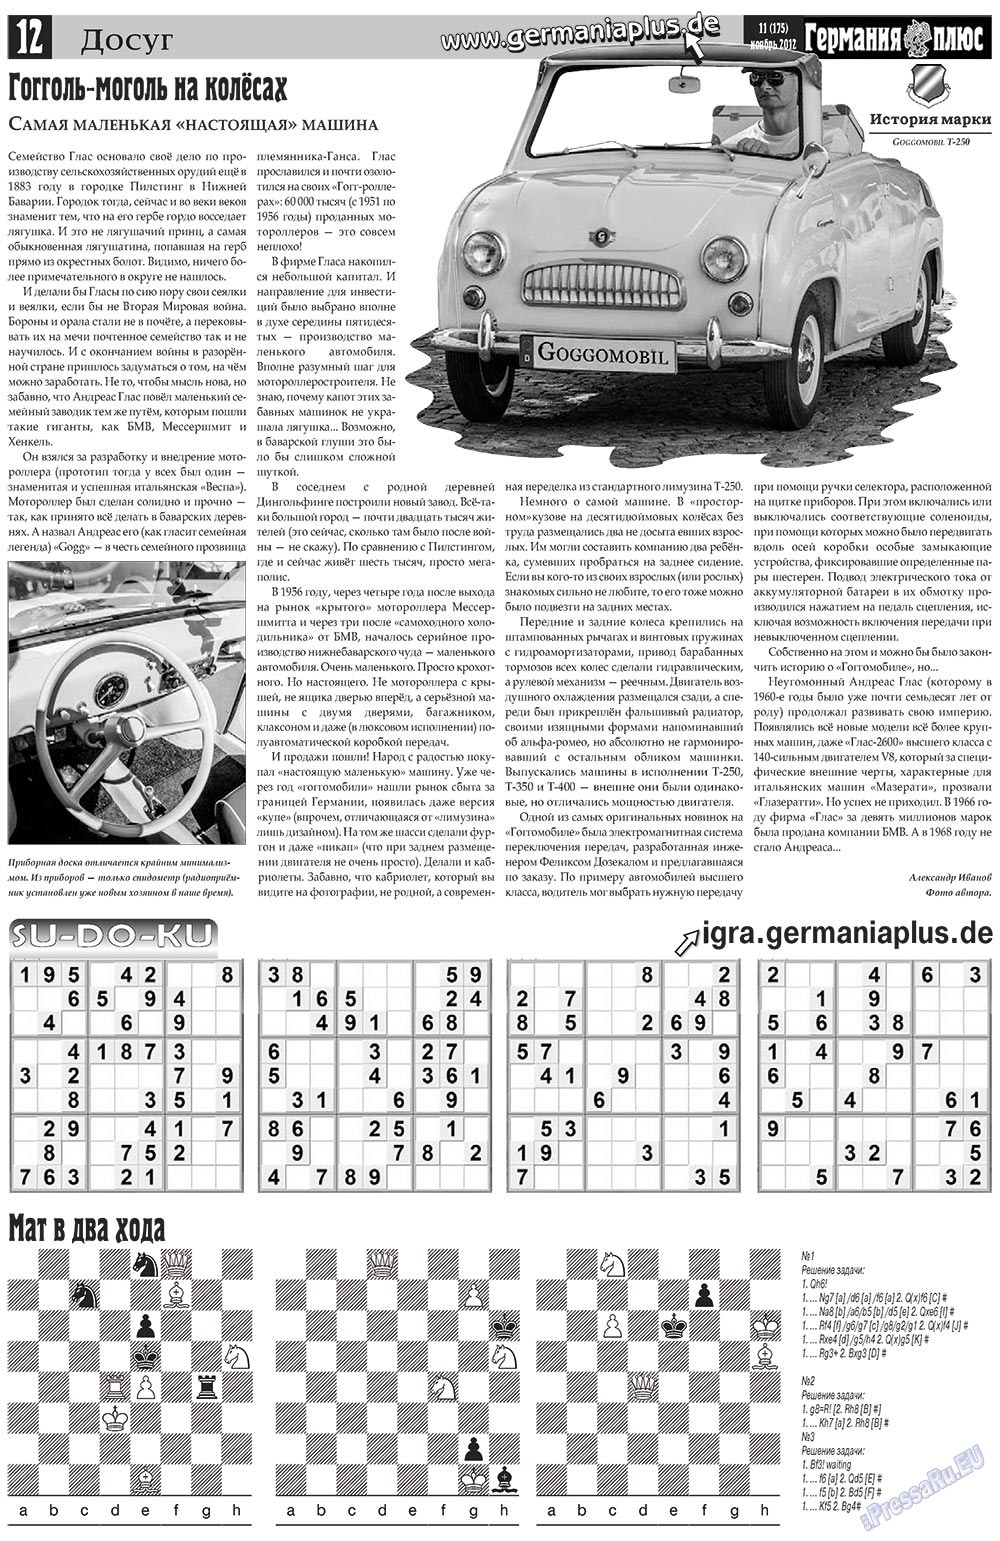 Германия плюс, газета. 2012 №11 стр.12